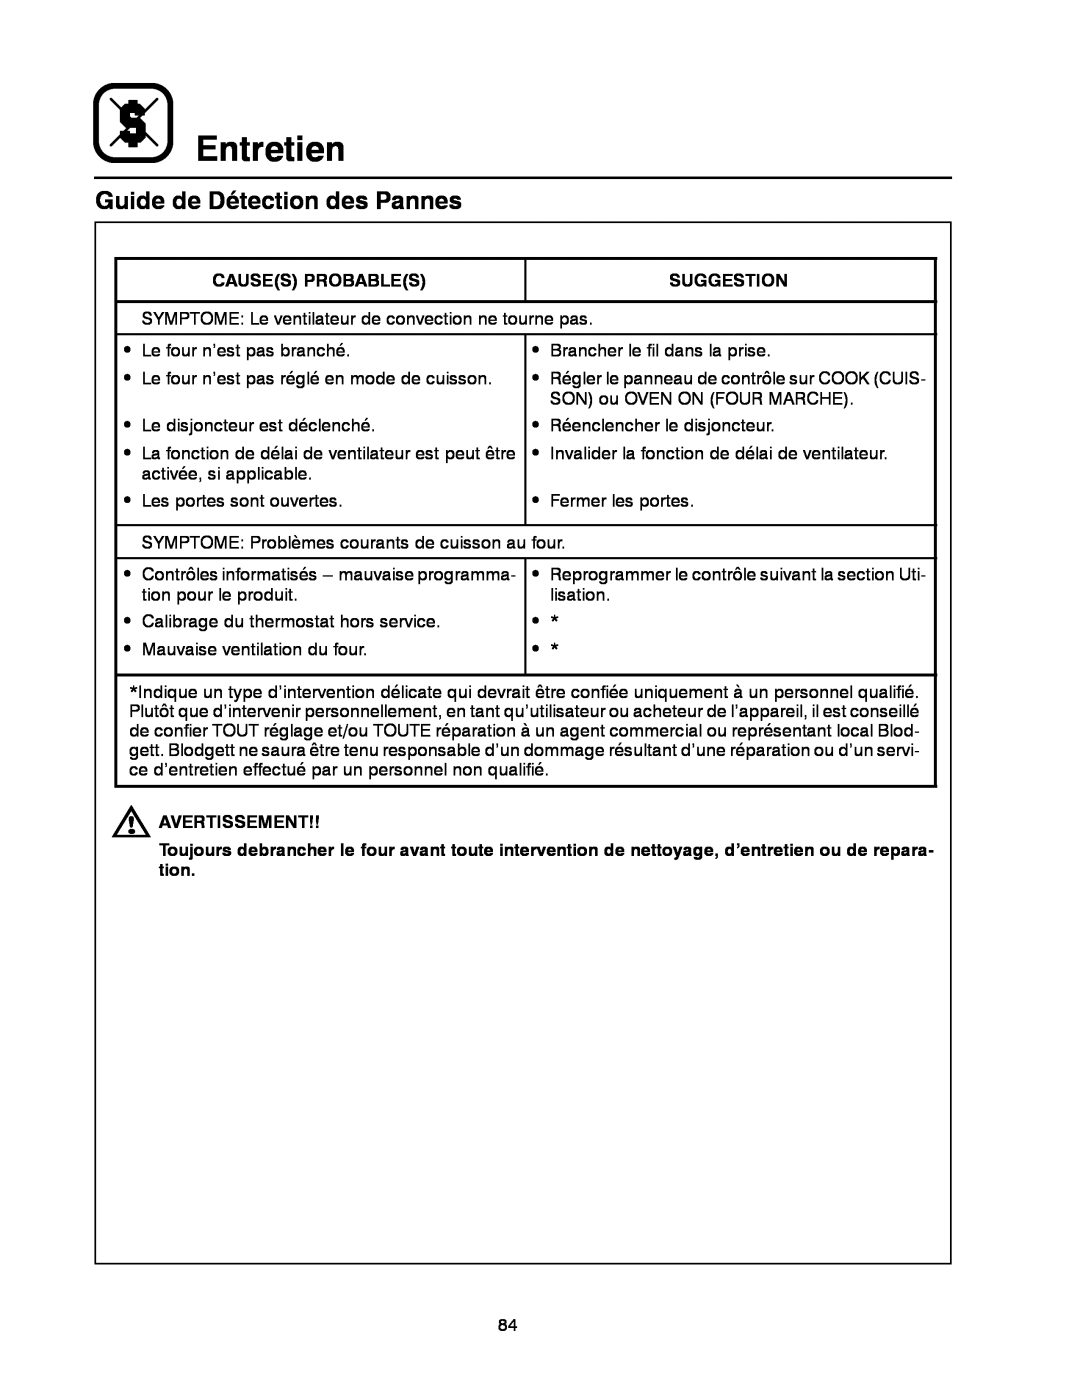 Blodgett DFG-50 manual Guide de Détection des Pannes, Entretien 